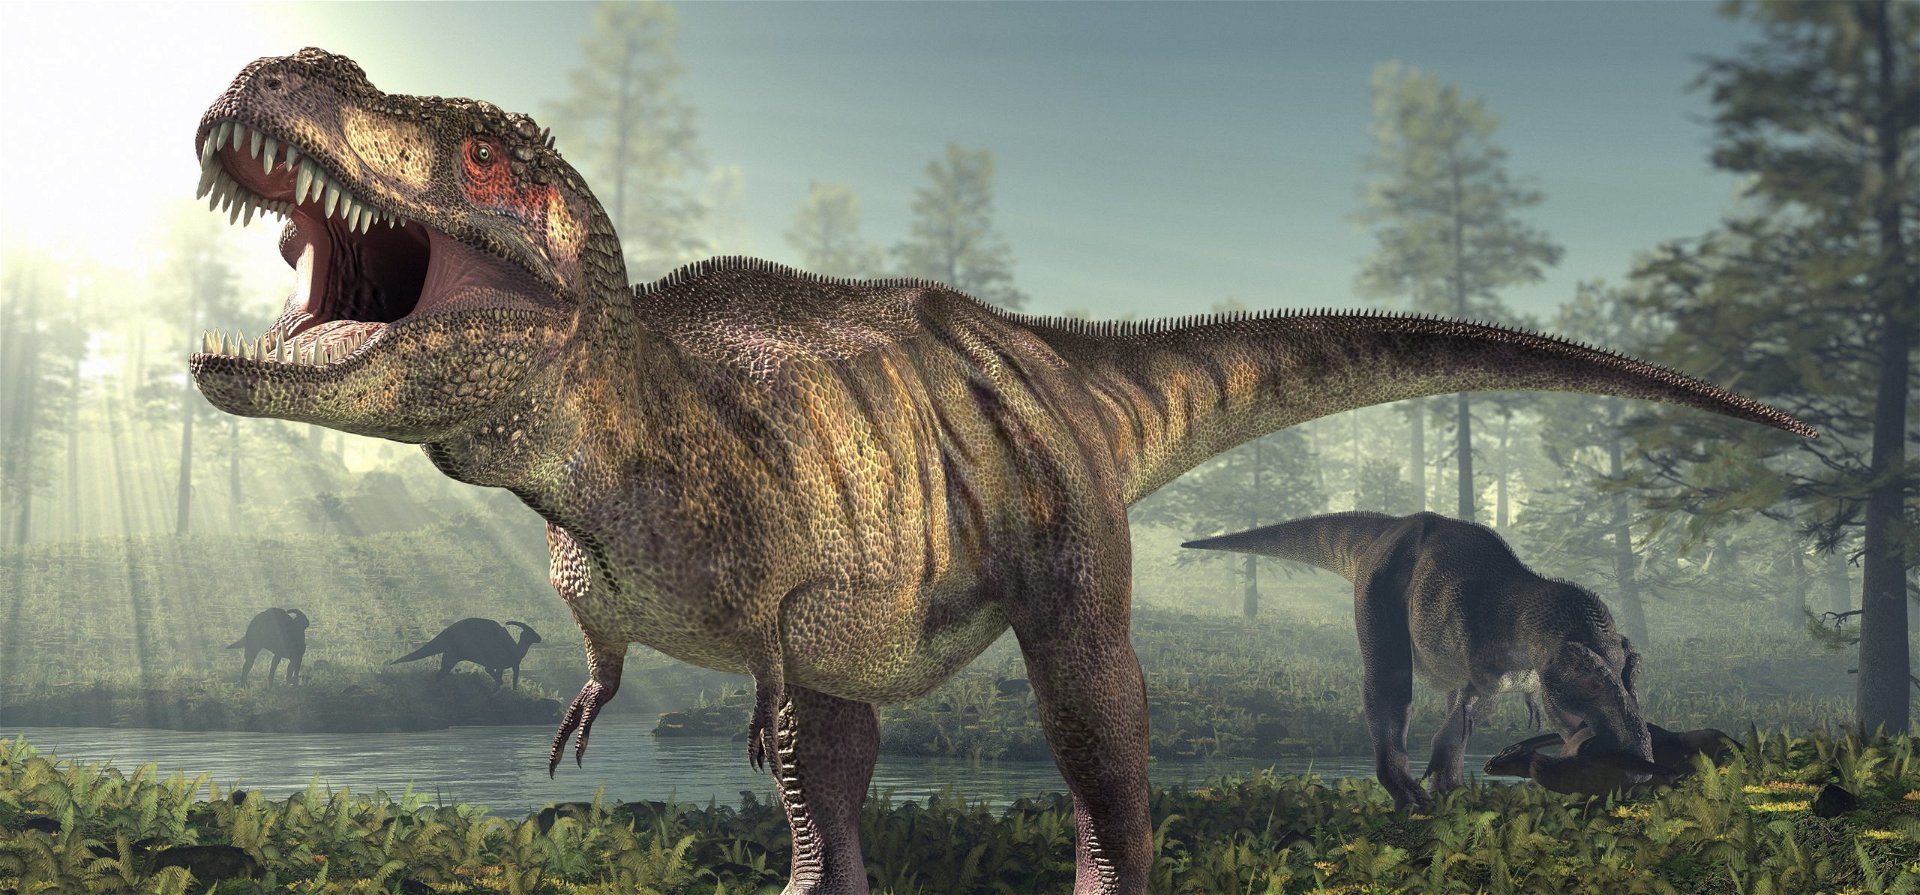 Ezek az apró, 10 centis élőlények lehettek a dinoszauruszok ősei